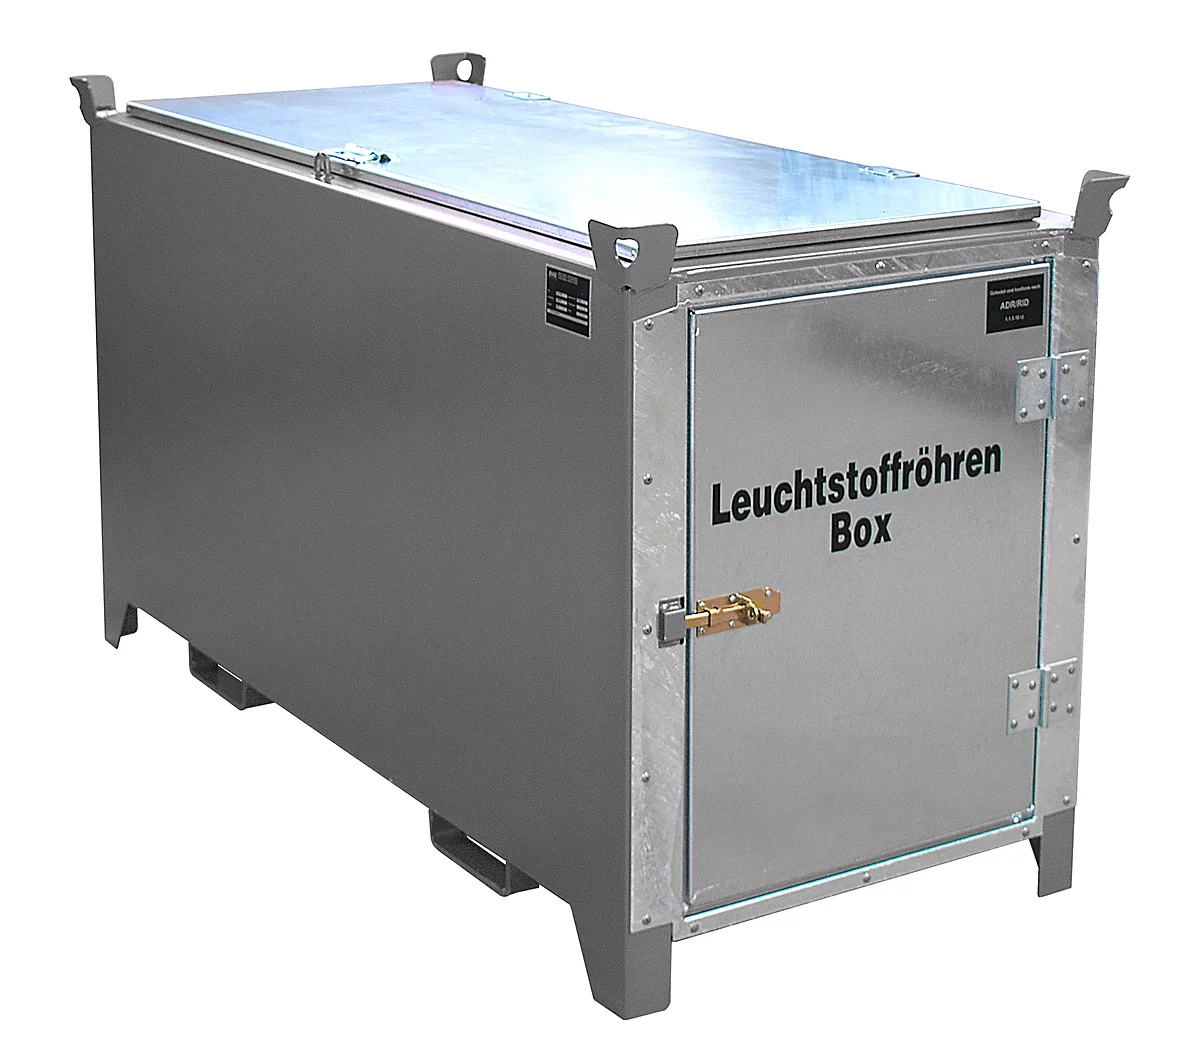 Leuchtstoffröhrenbox BAUER SL-D 150, Stahlblech, unterfahrbar, abschließbar, Tür/Deckel verzinkt, B 1700 x T 770 x H 975 mm, grau